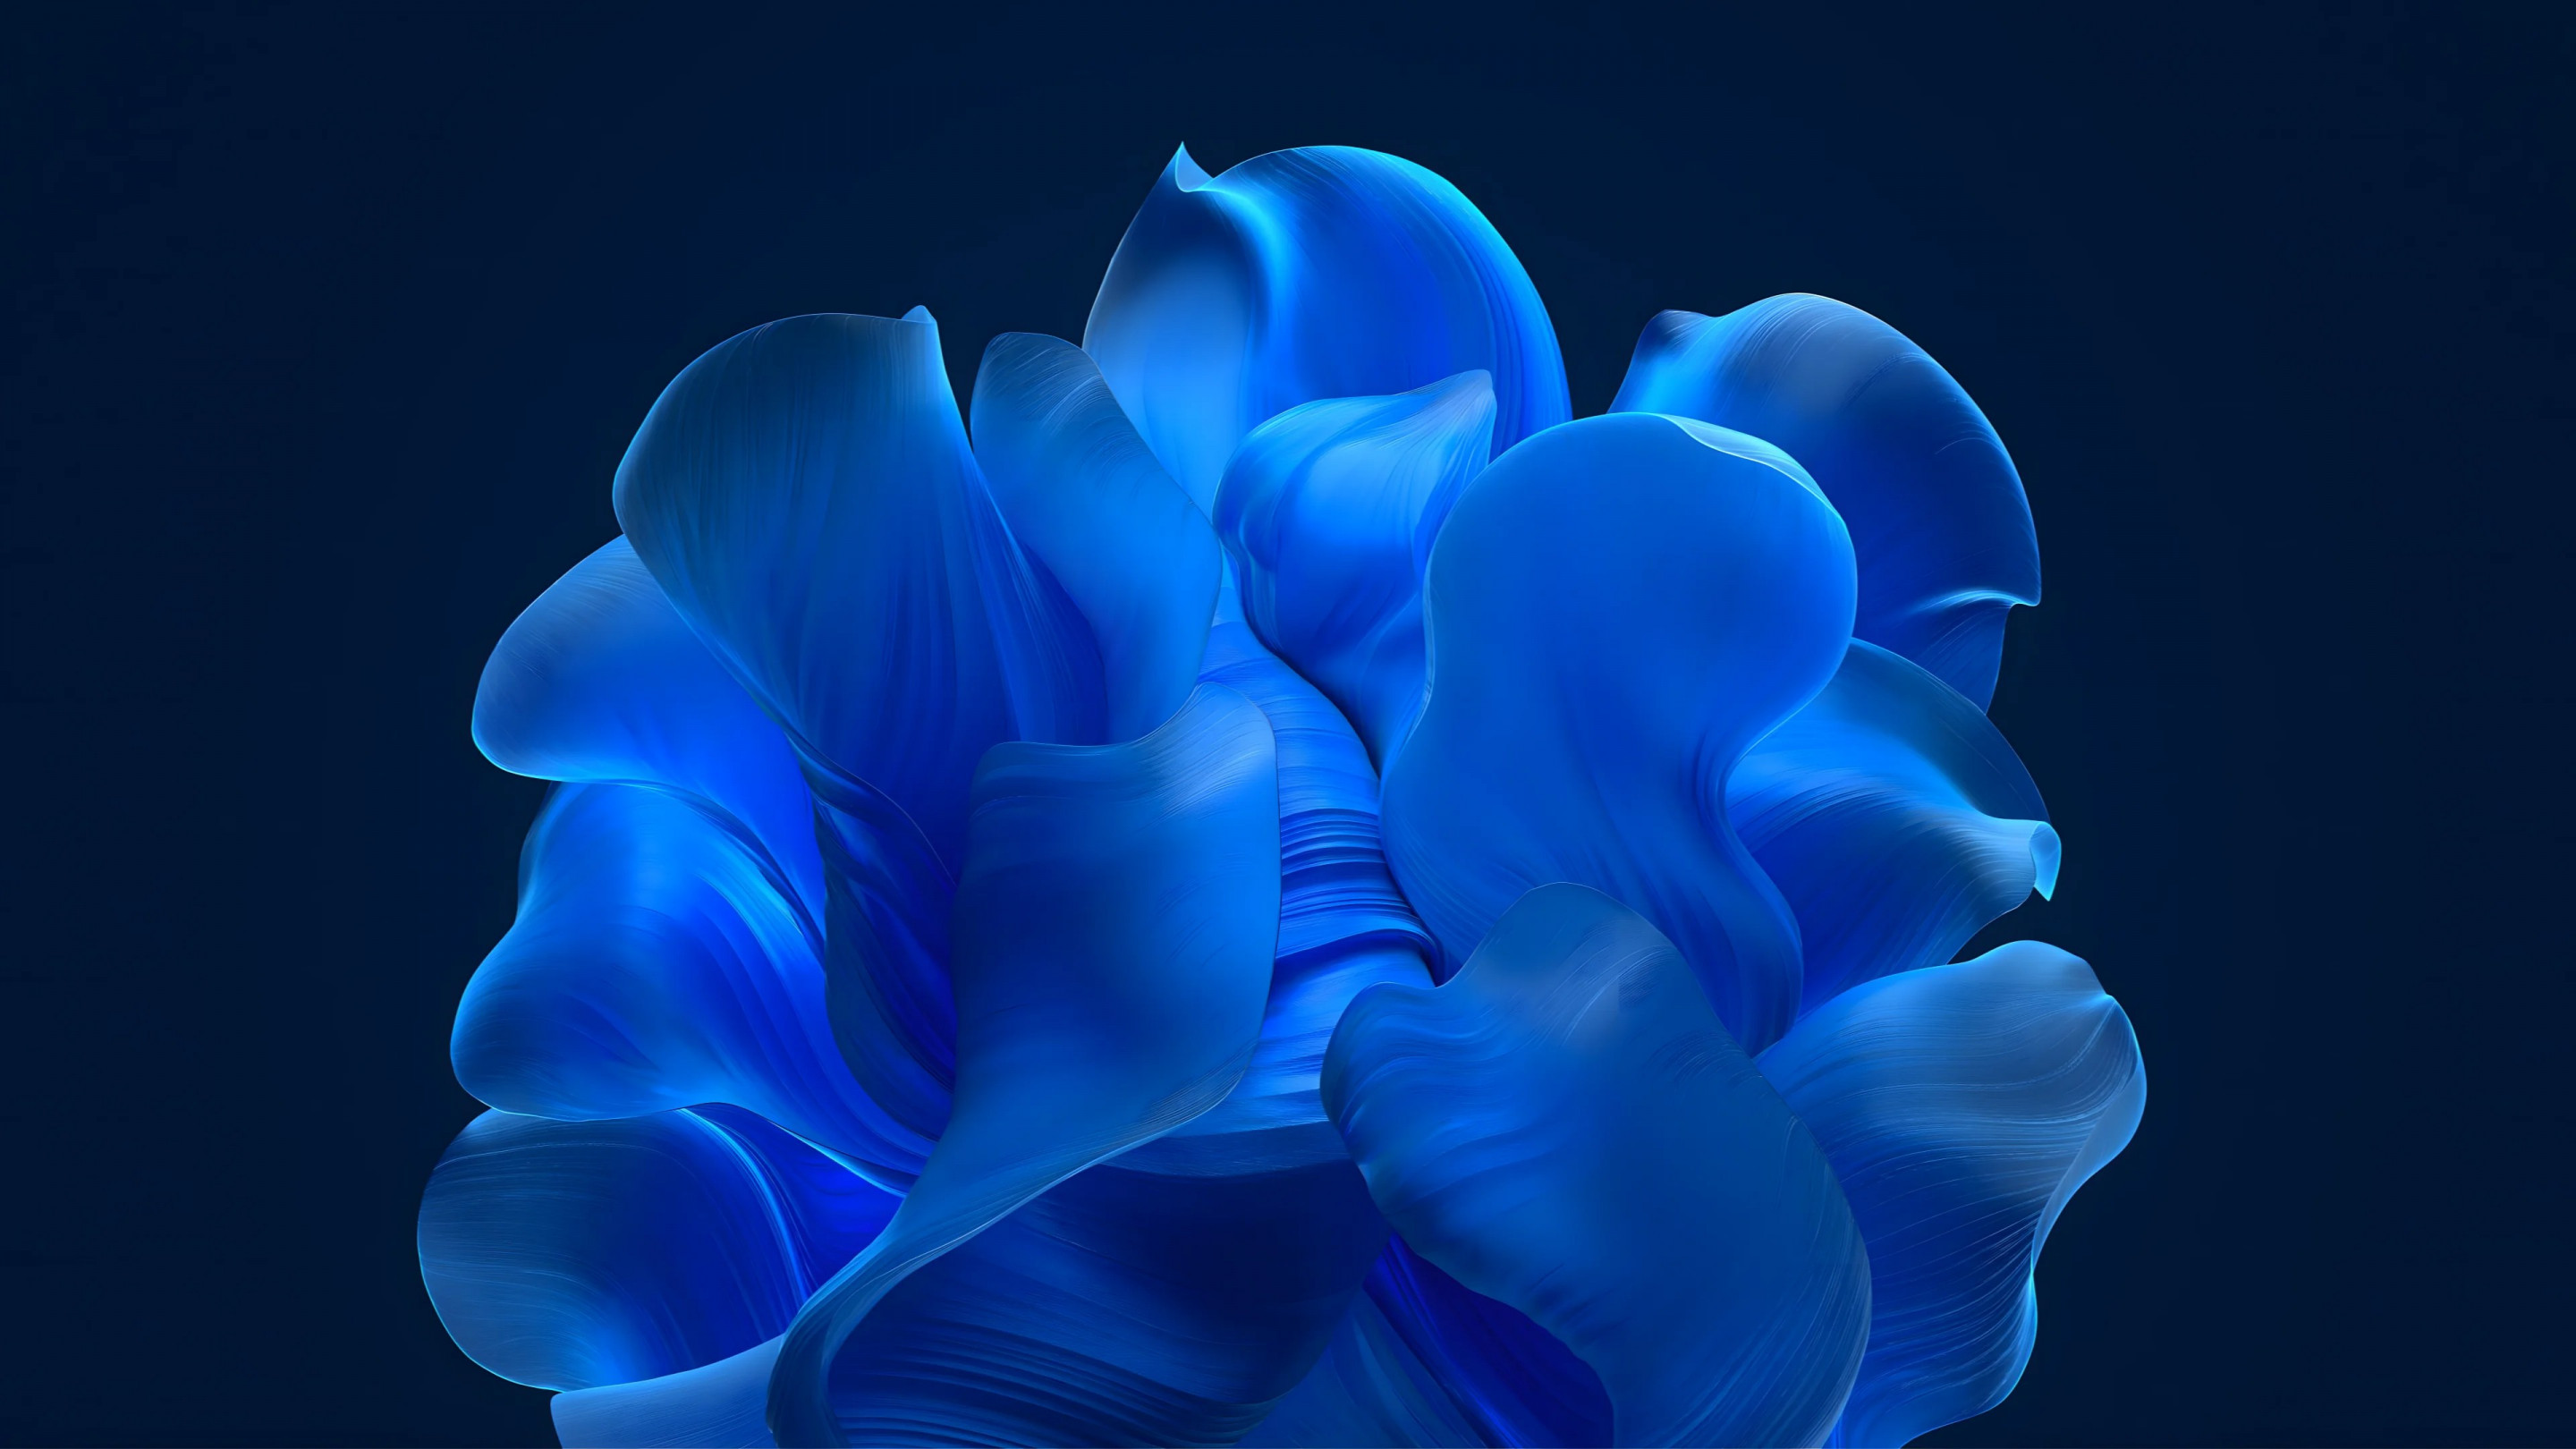 The blue petals wallpaper 2880x1620